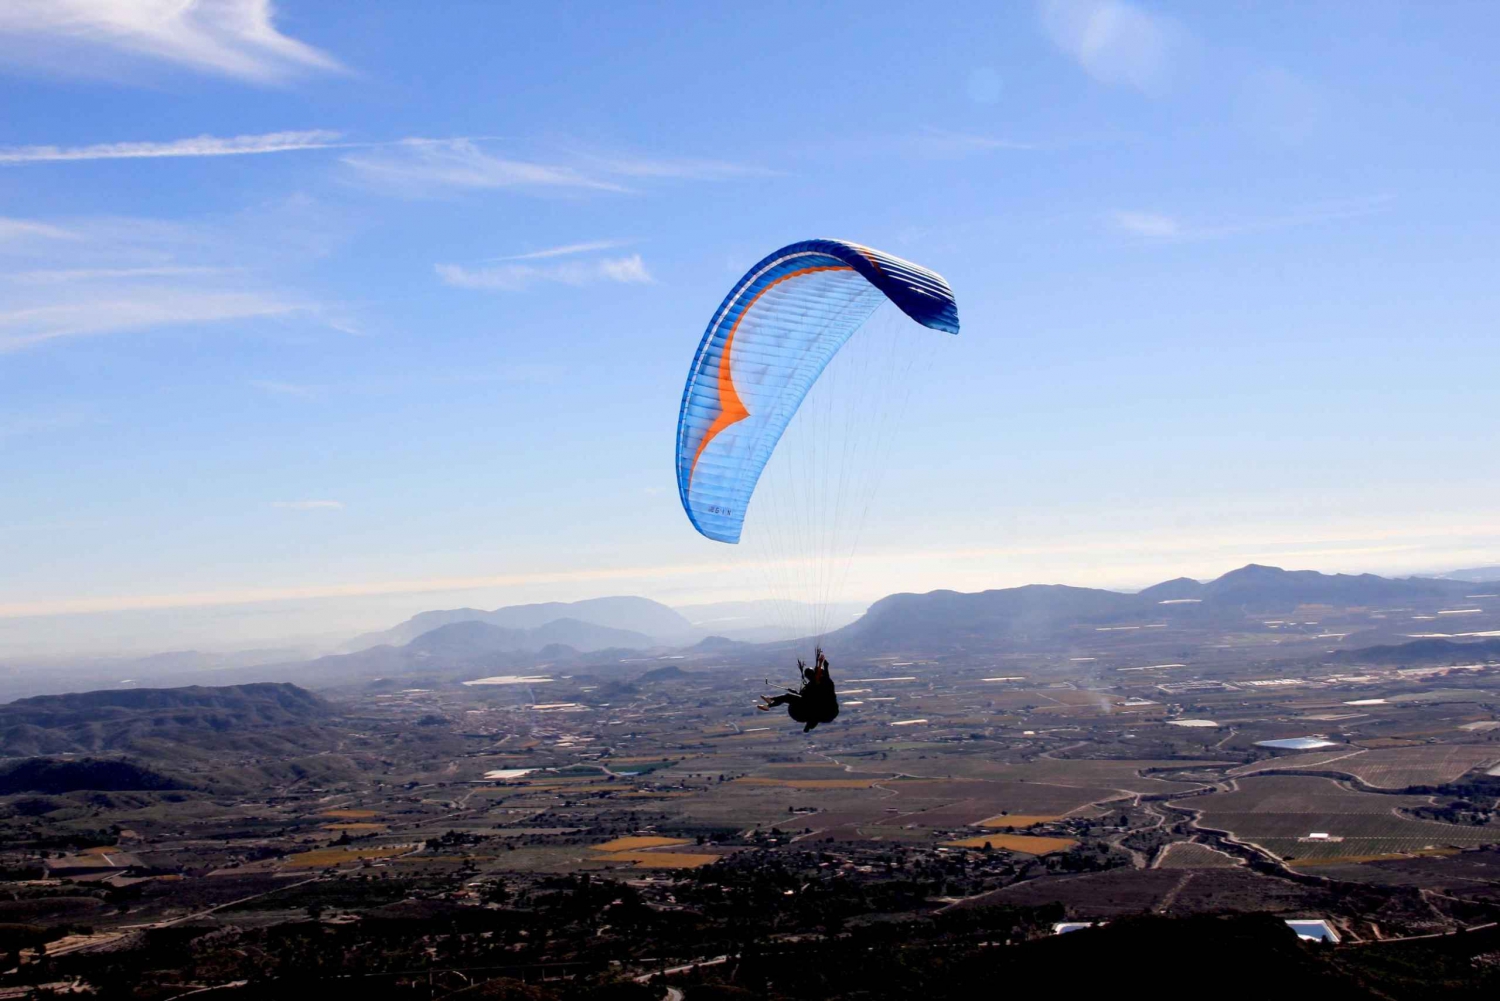 Alicante: Tandem Paraglide Flight